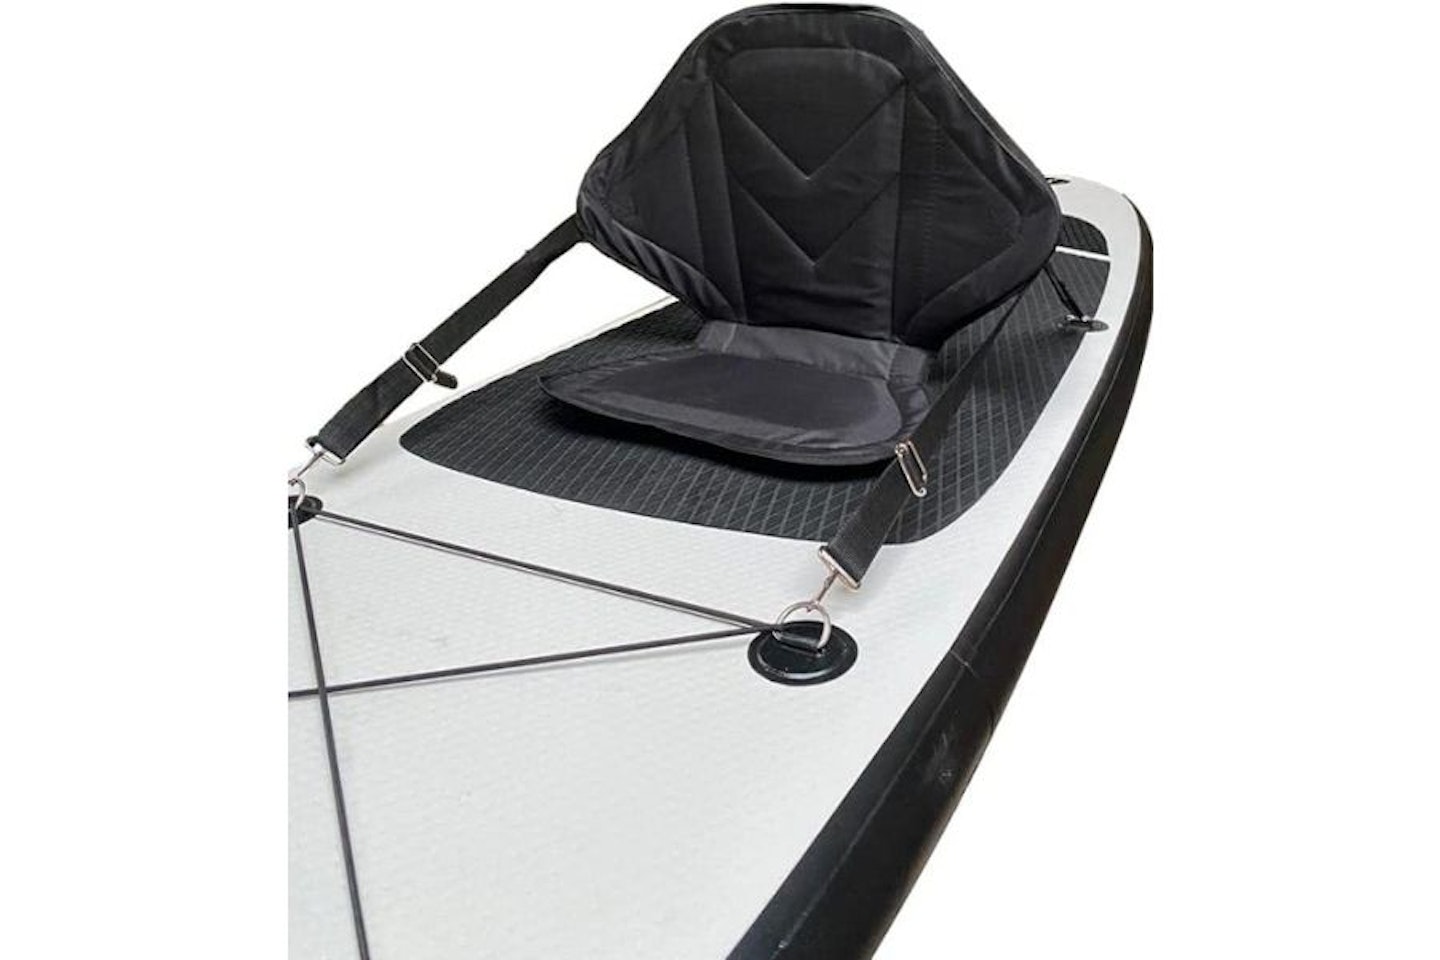 HIKS High Back SUP Kayak Seat Chair